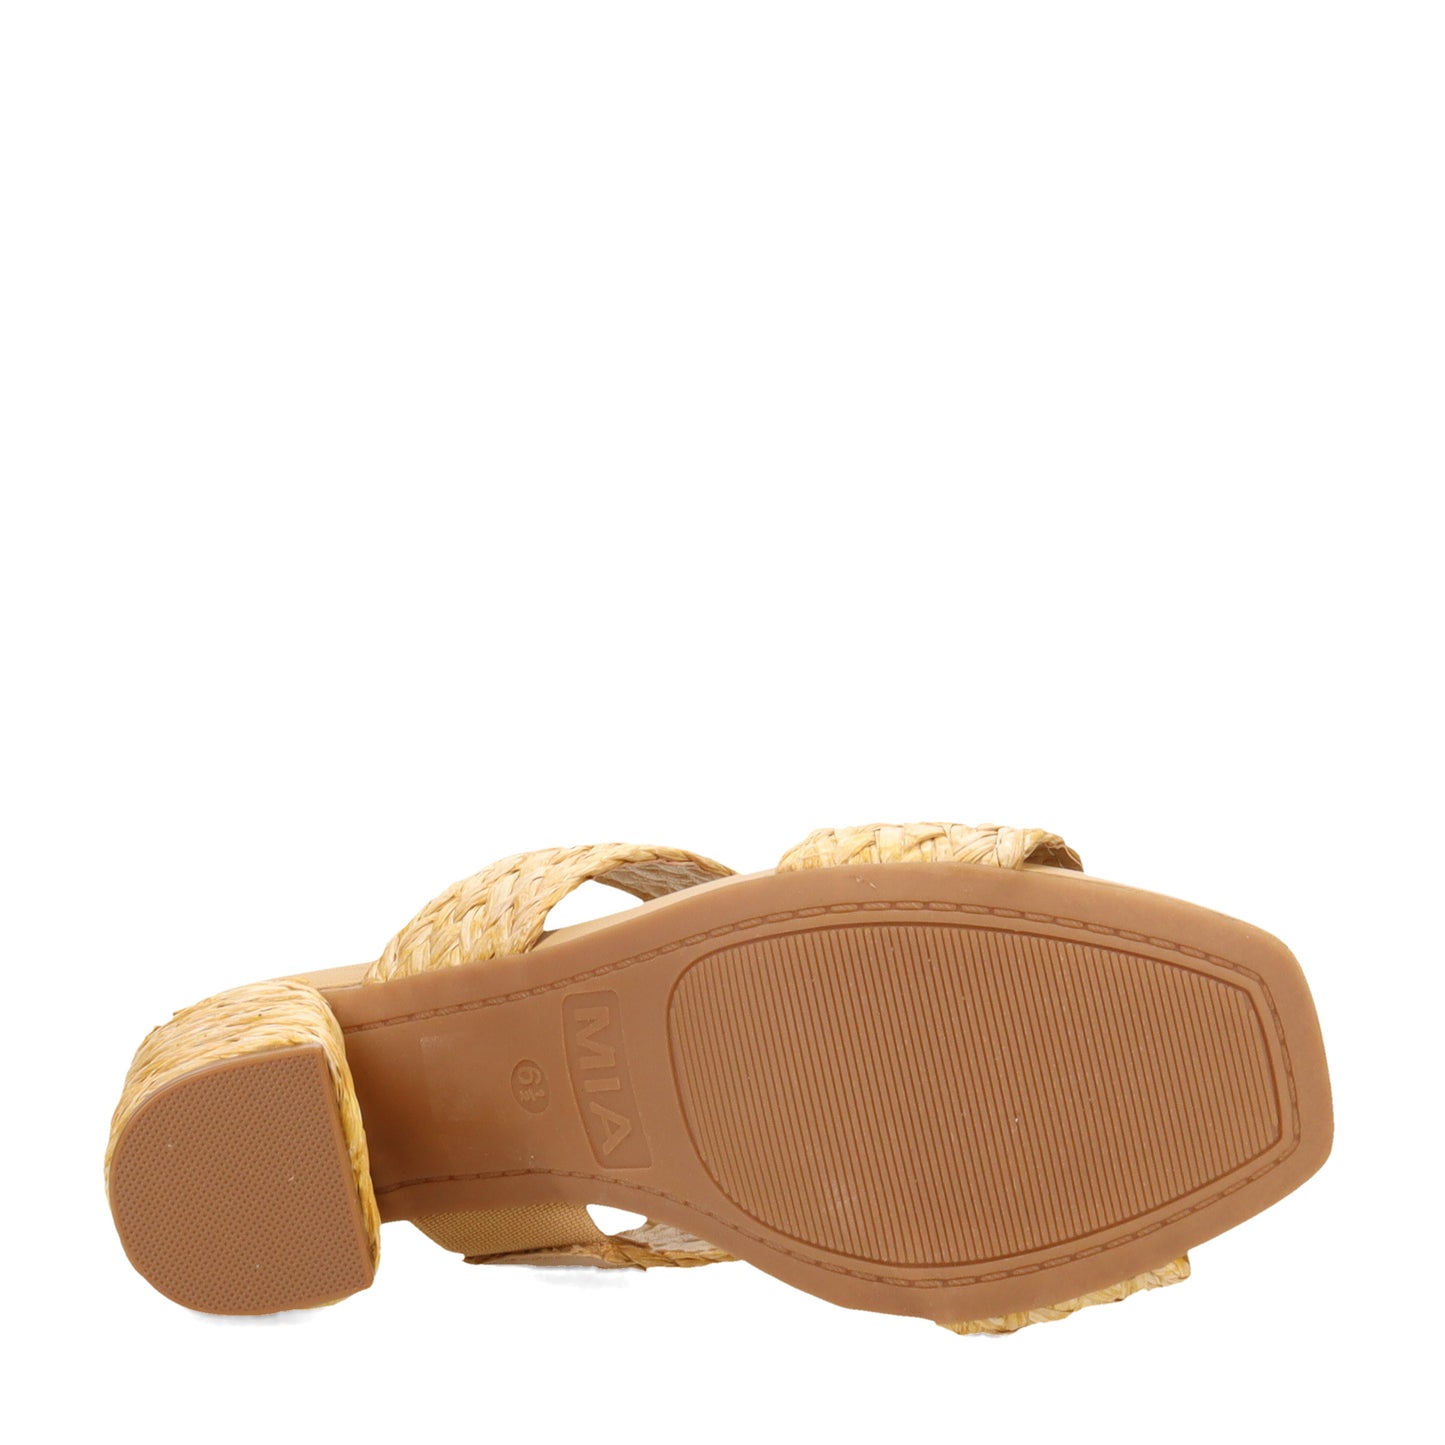 Peltz Shoes  Women's MIA Felicity Sandal Natural MH1665-NATURAL